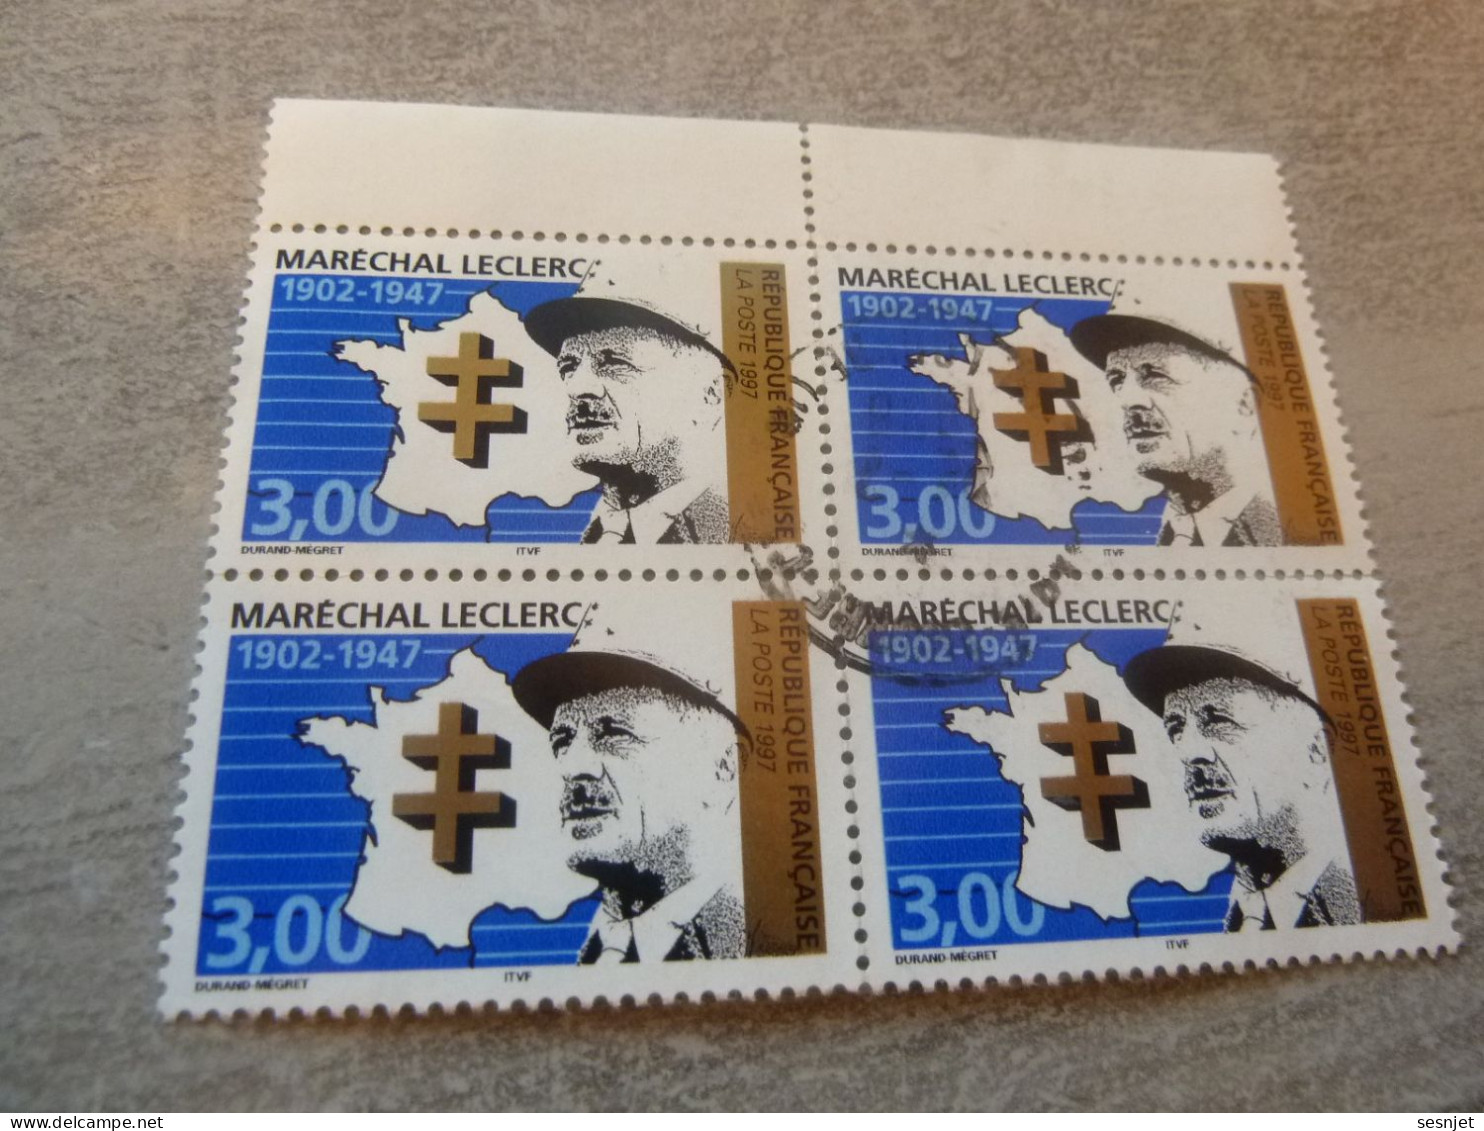 Général Leclerc (1902-1947) Maréchal - 3f. - Yt 3126 - Vert, Noir Et Bleu - Quadruple Oblitérés - Année 1997 - - Used Stamps